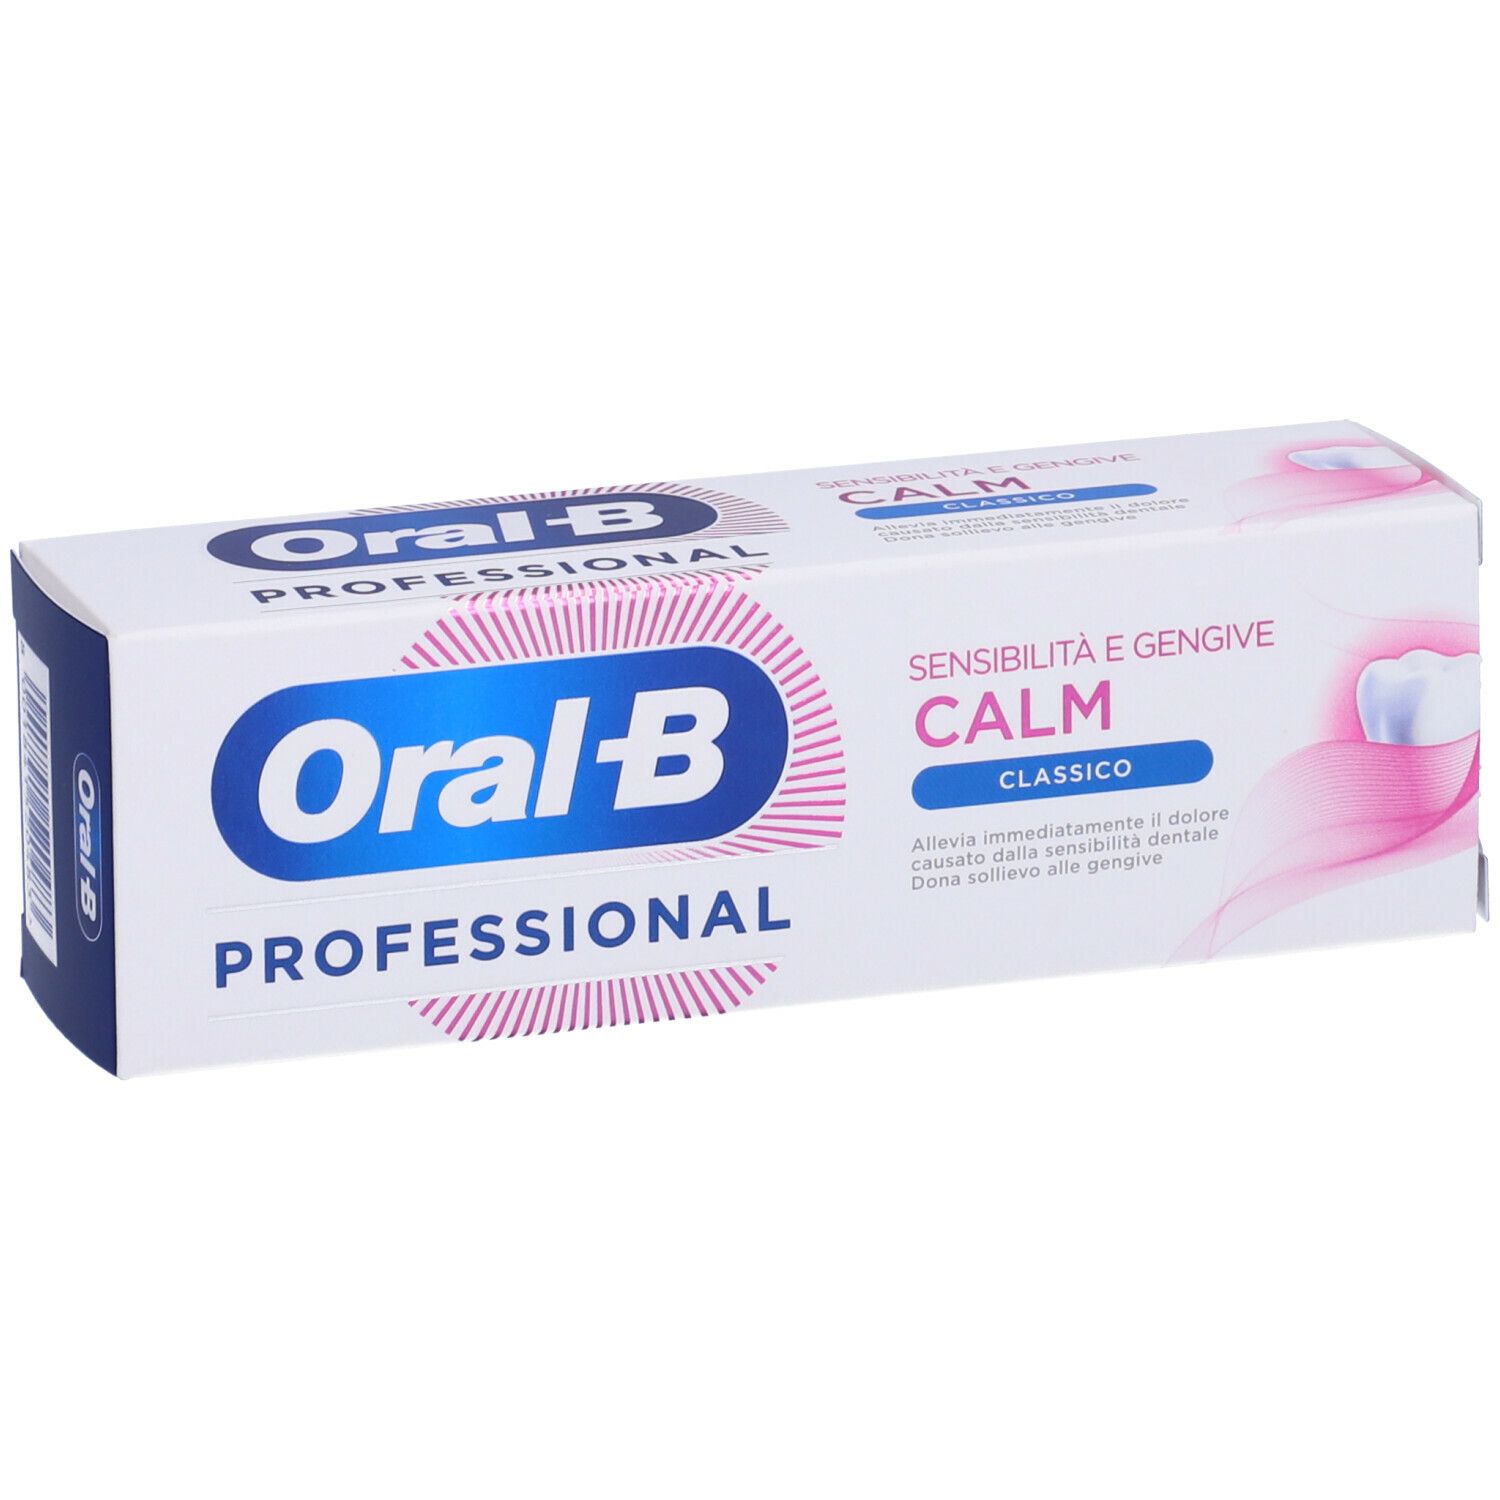 Oral-B Professional Dentifricio Sensibilità e Gengive Calm